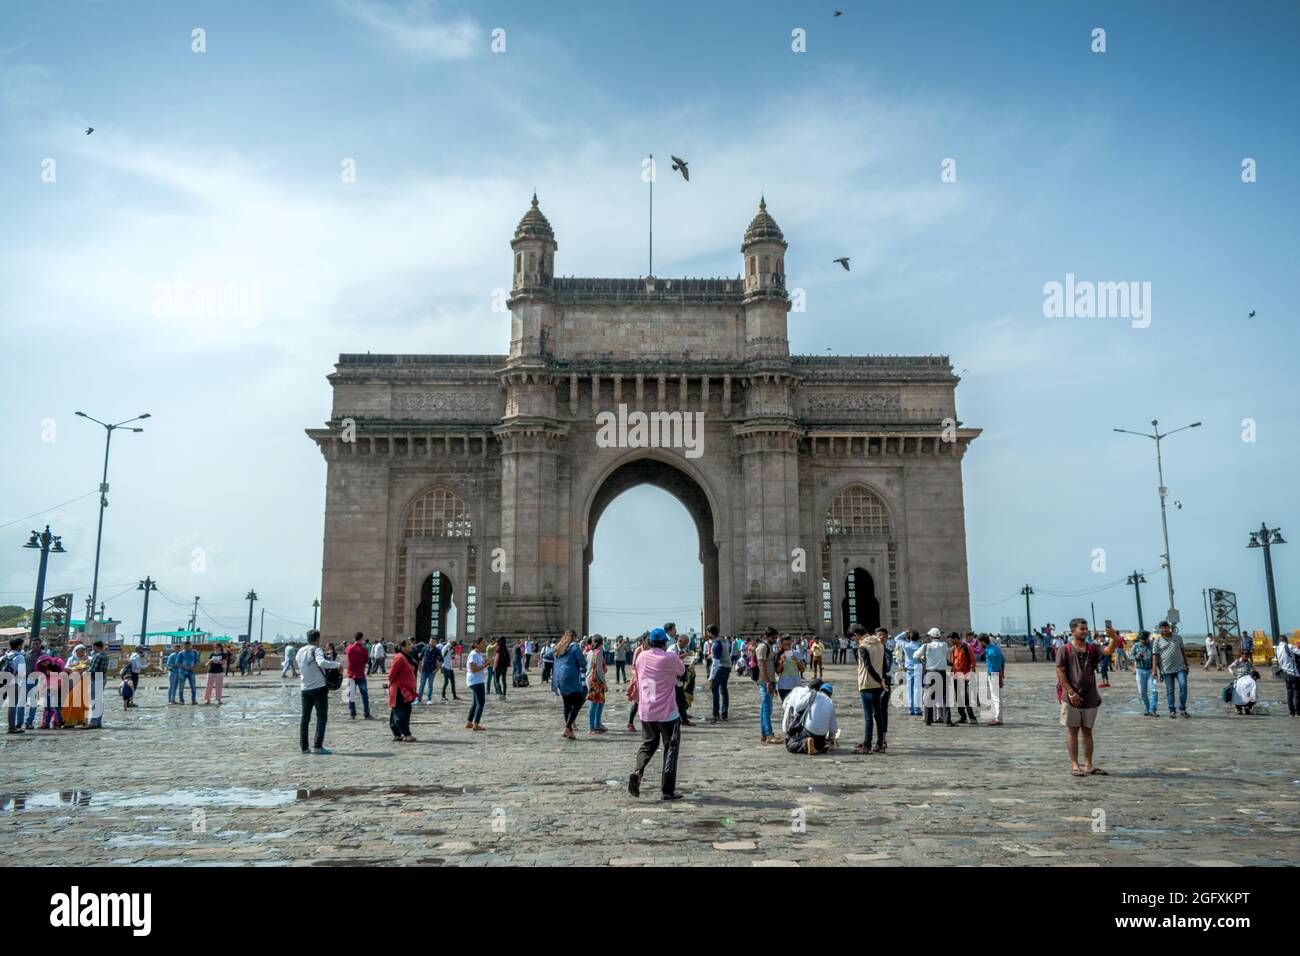 Mumbai, Maharastra, India - Jul 14 2019: People at the iconic Gateway of India, a symbol of the heritage of Mumbai, India Stock Photo